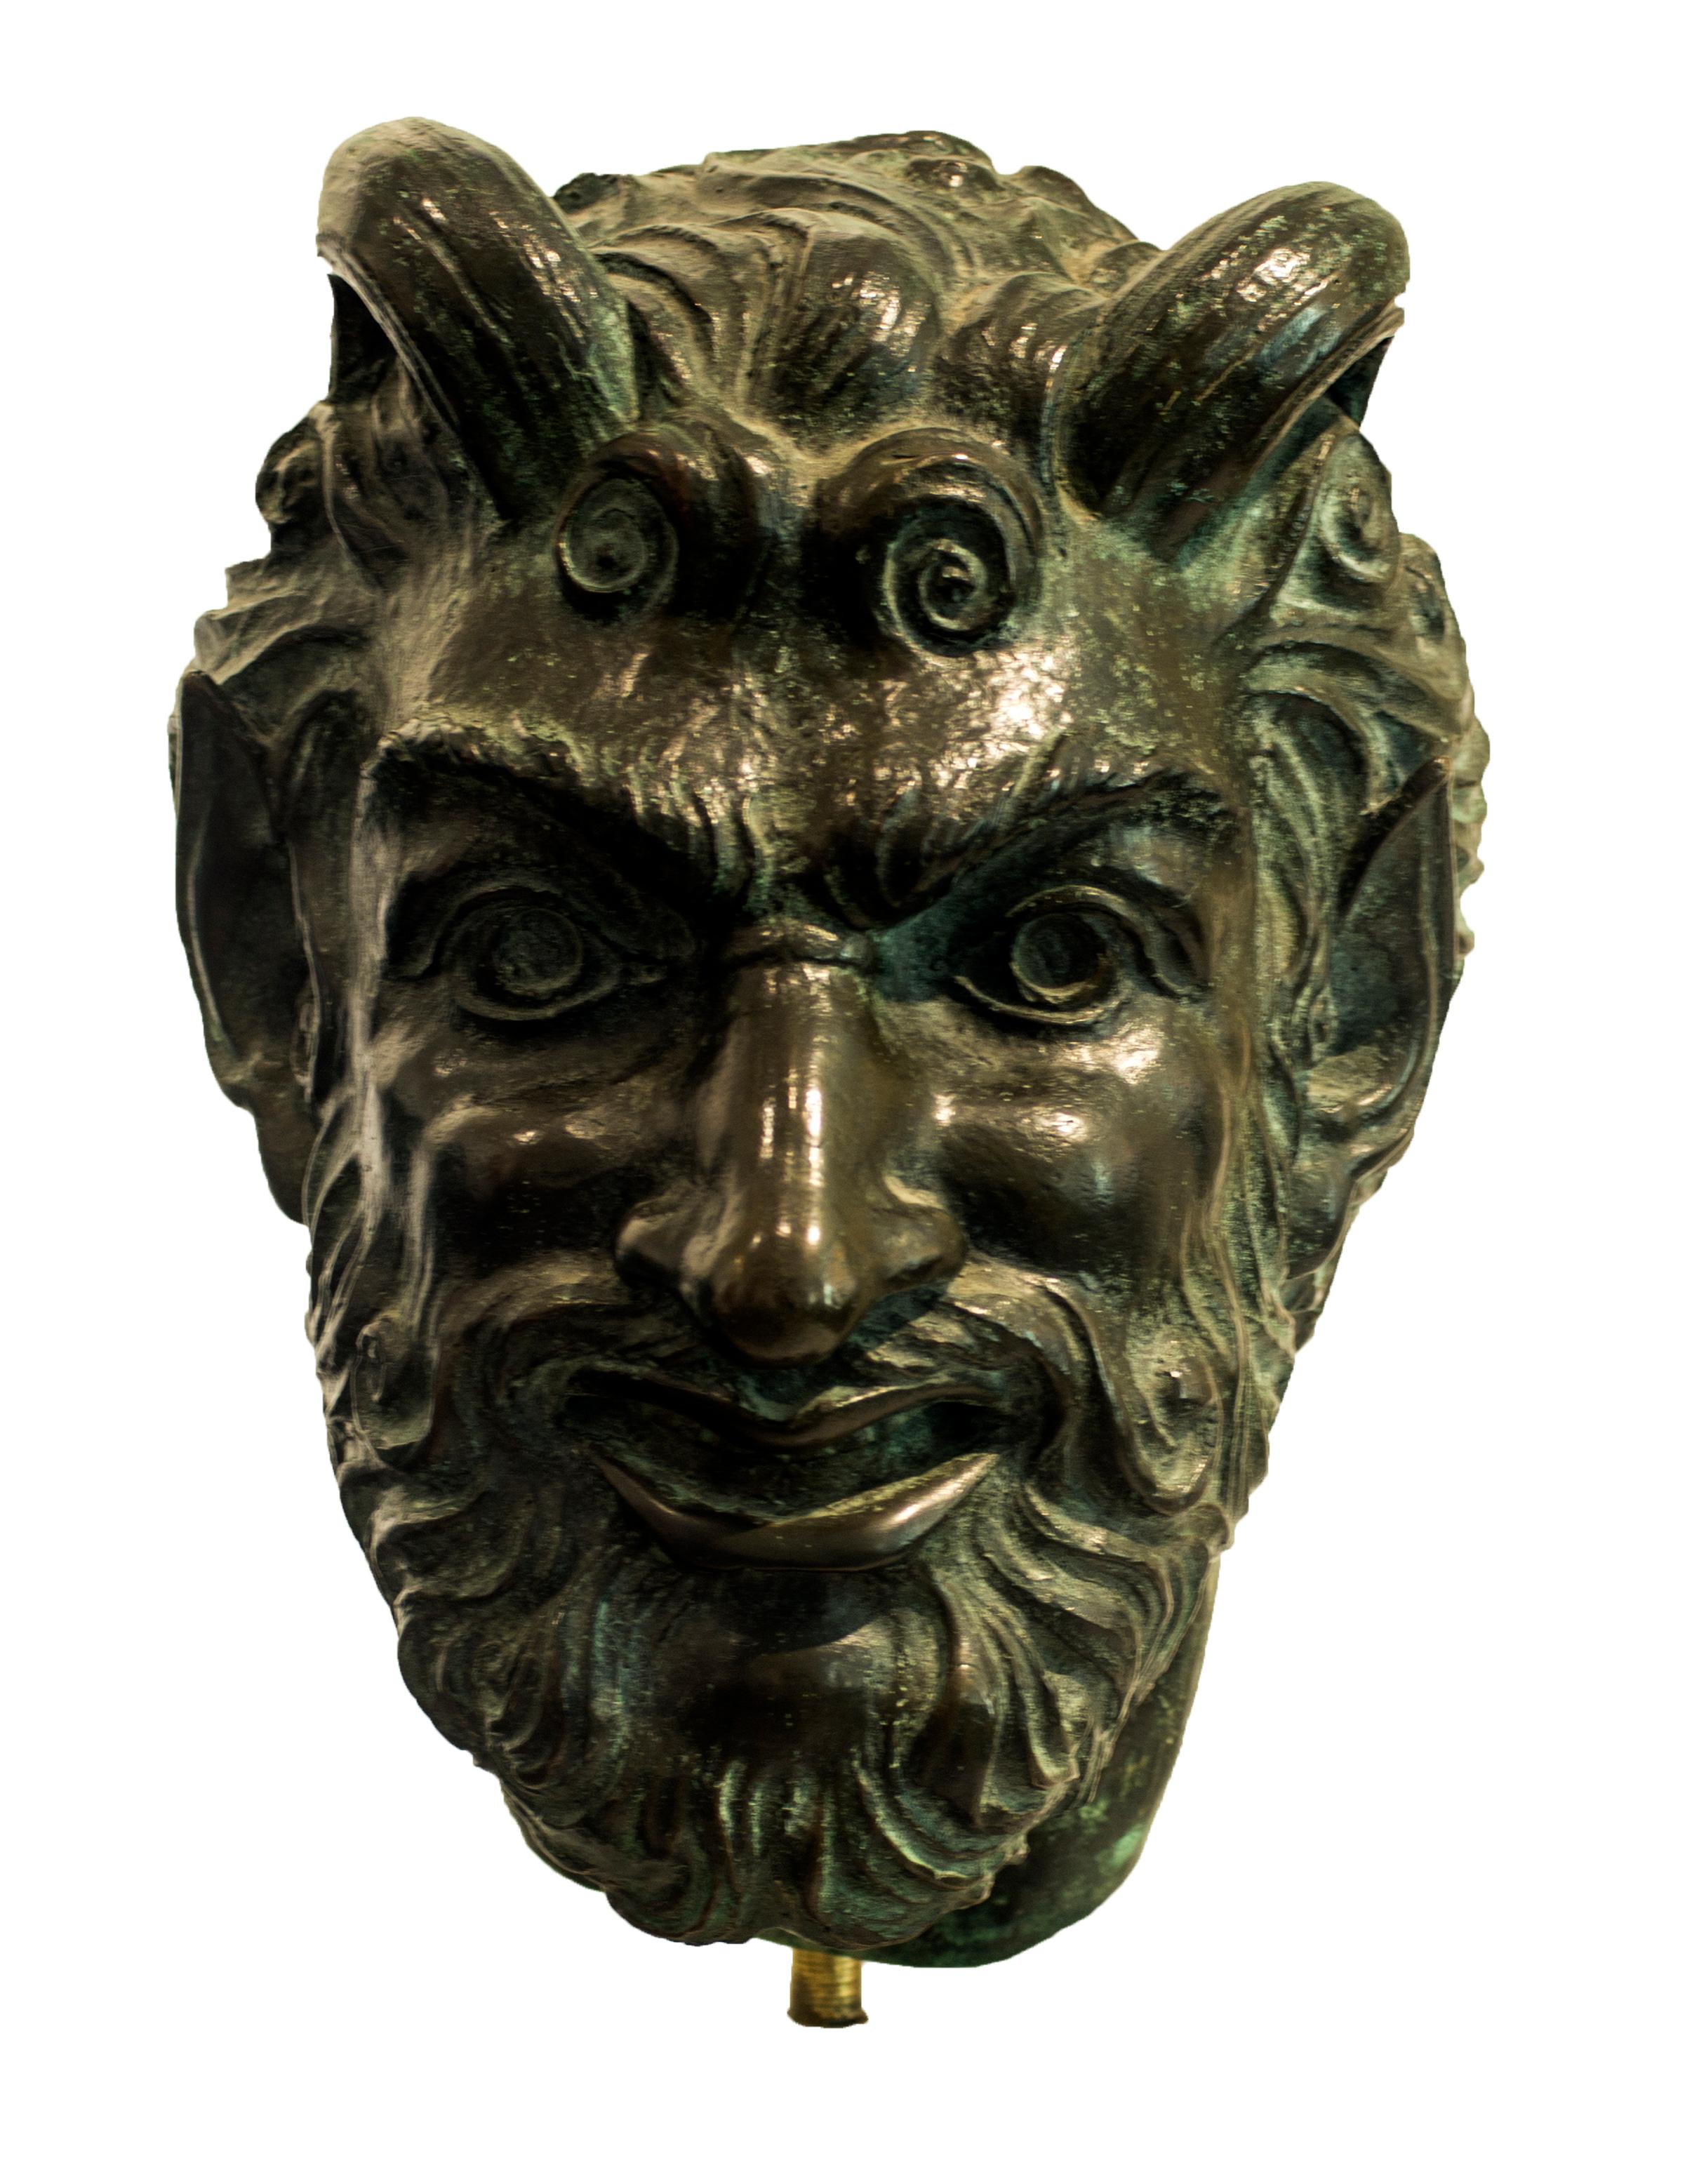 Sculpture de tête en bronze réalisée par Giulio Aristide Sartorio, peintre, sculpteur et réalisateur italien de Rome.

Ayant fréquenté l'Institut des beaux-arts de Rome, Sartorio présente une œuvre symboliste à l'Exposition internationale de Rome de